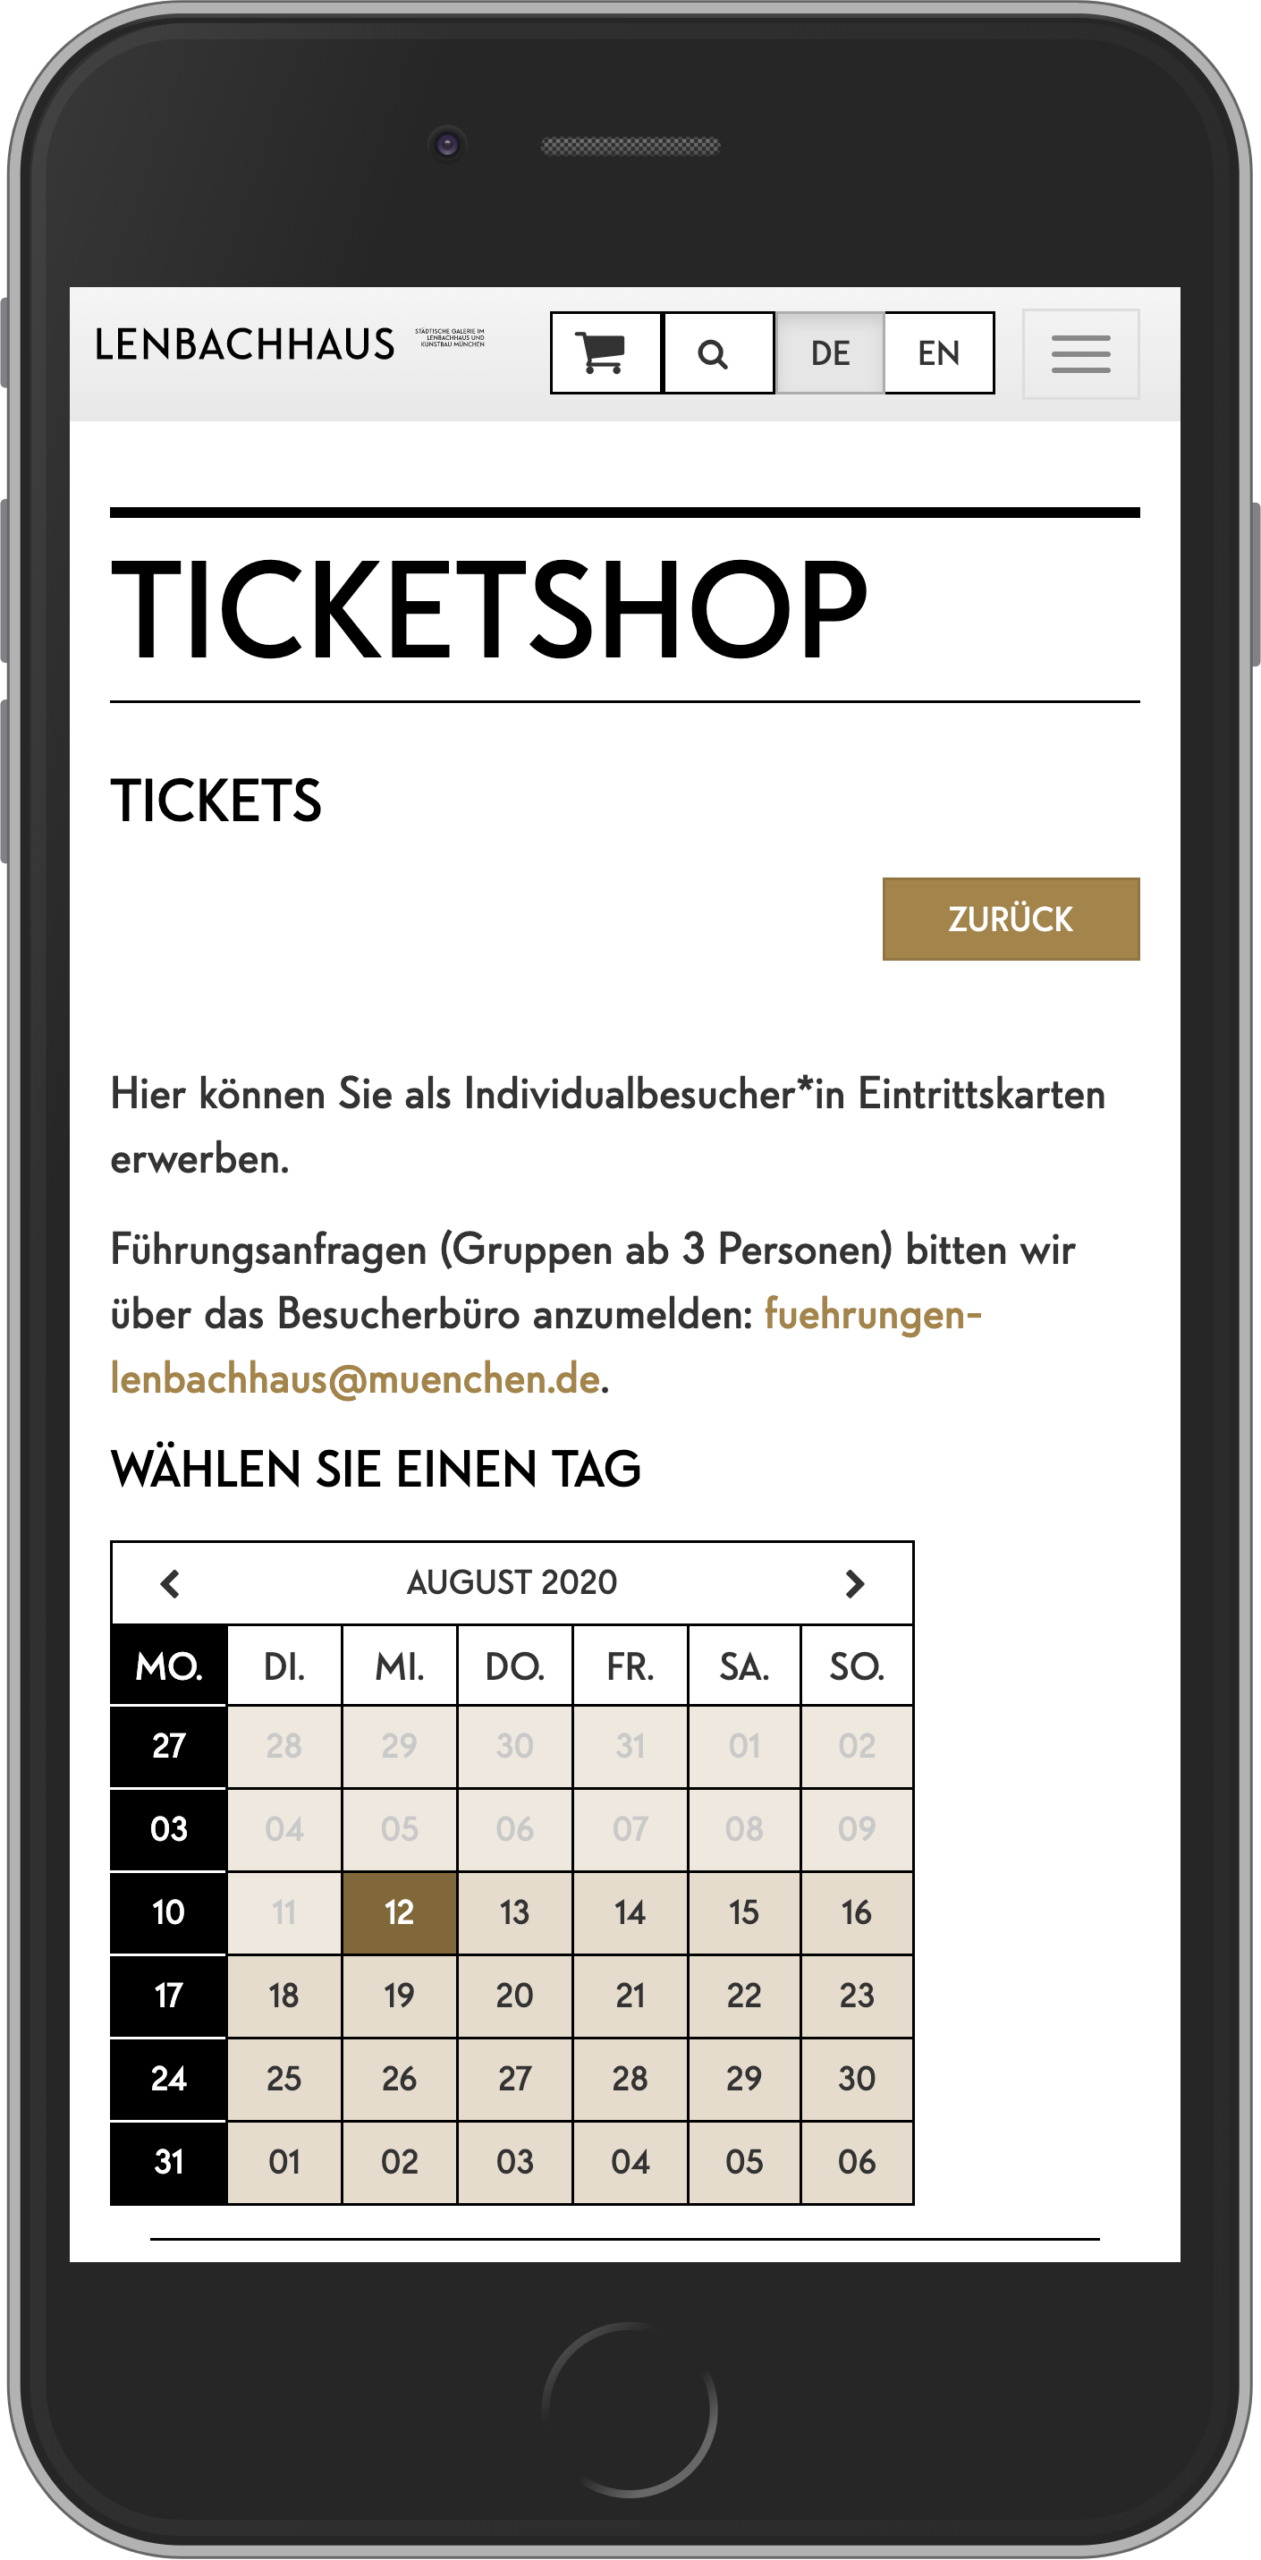 Mobile Ansicht der Datumsauswahl im Ticketkaufvorgang im Online-Shop des Lenbachhaus München